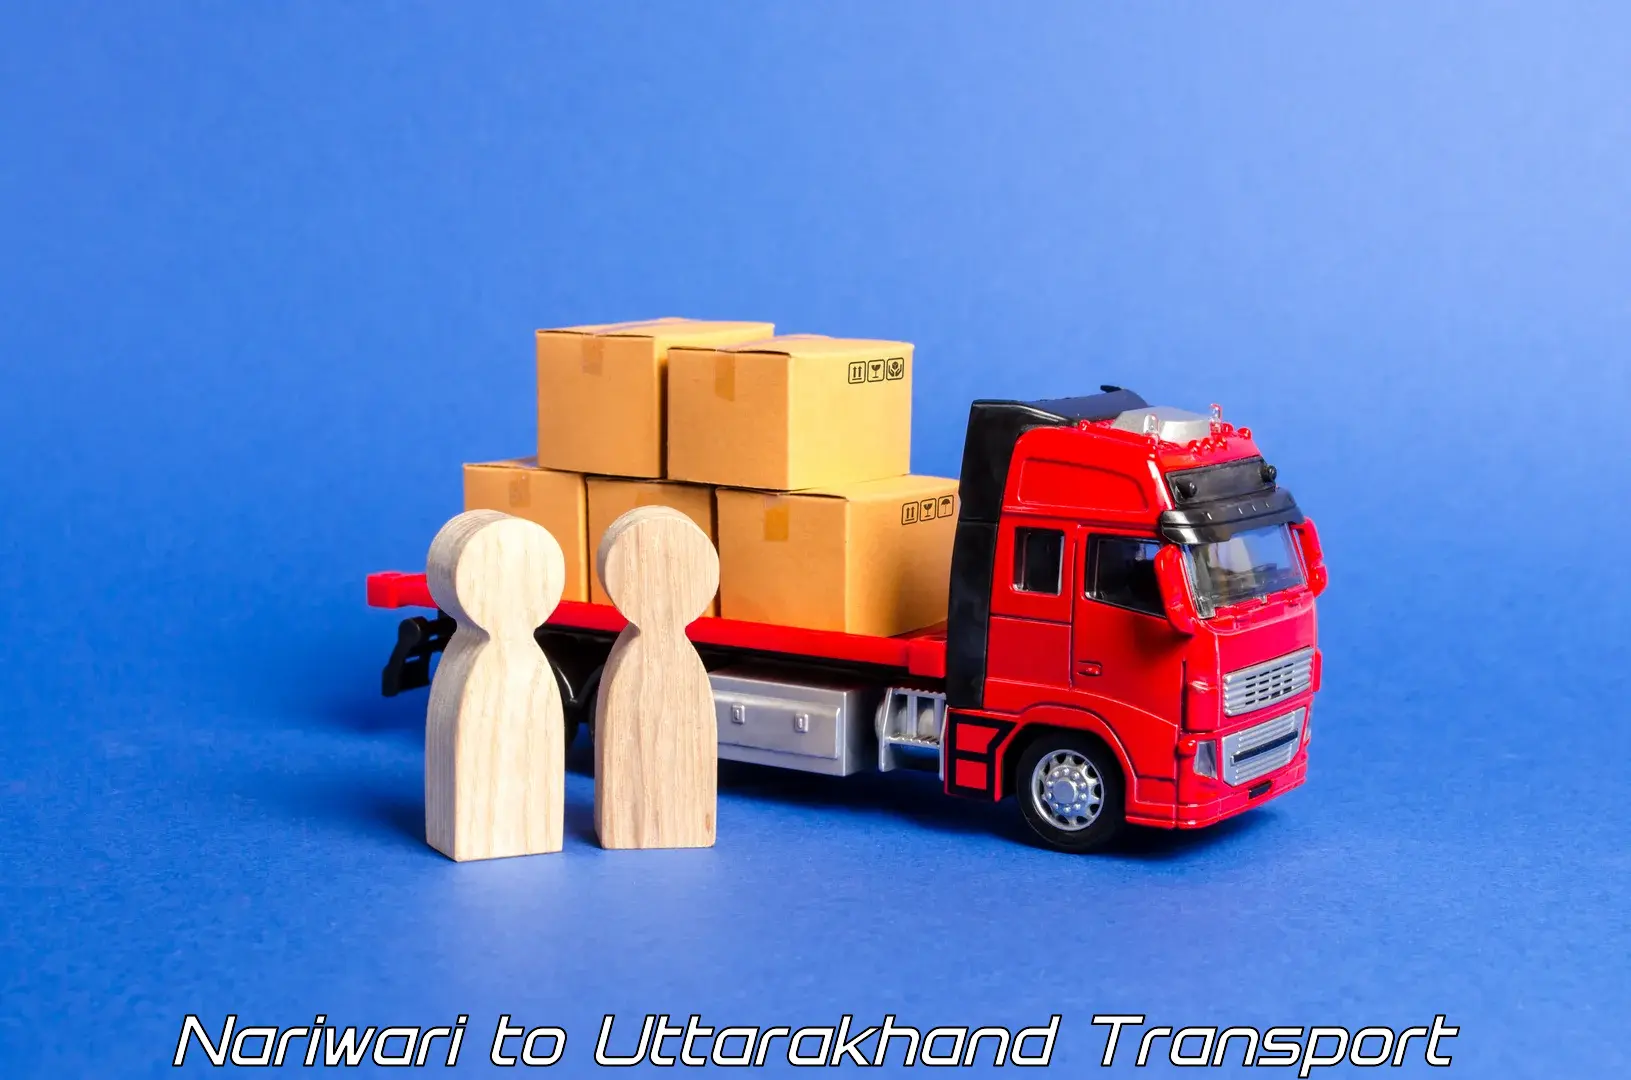 Truck transport companies in India Nariwari to Pithoragarh